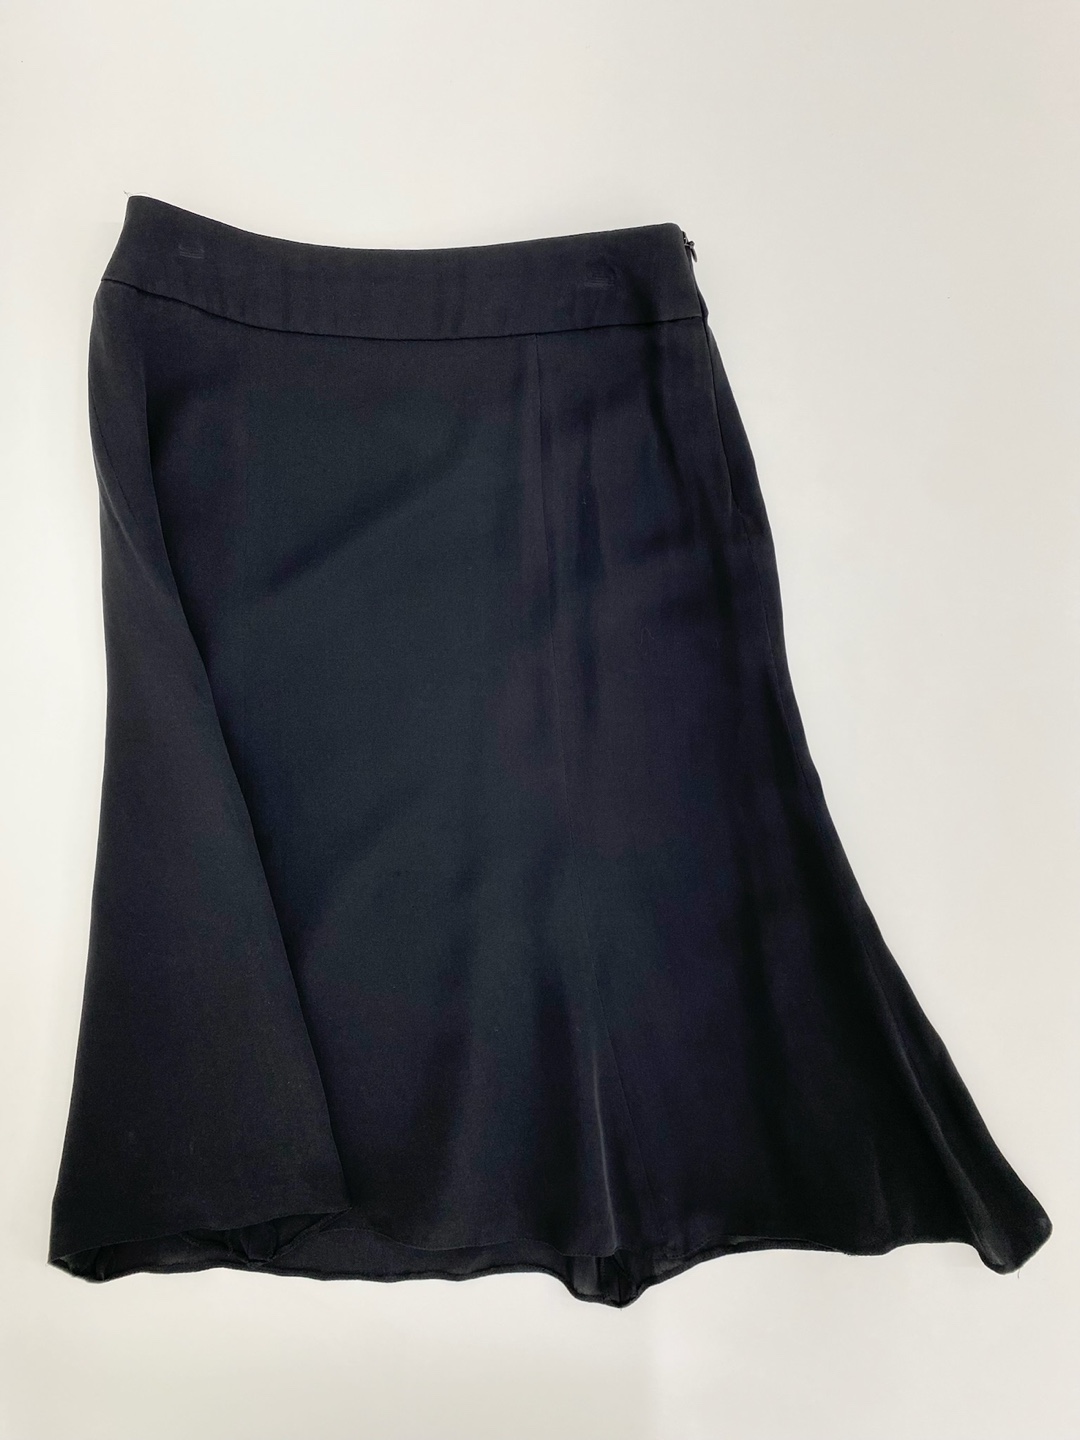 Armani collezioni black silk flared skirt